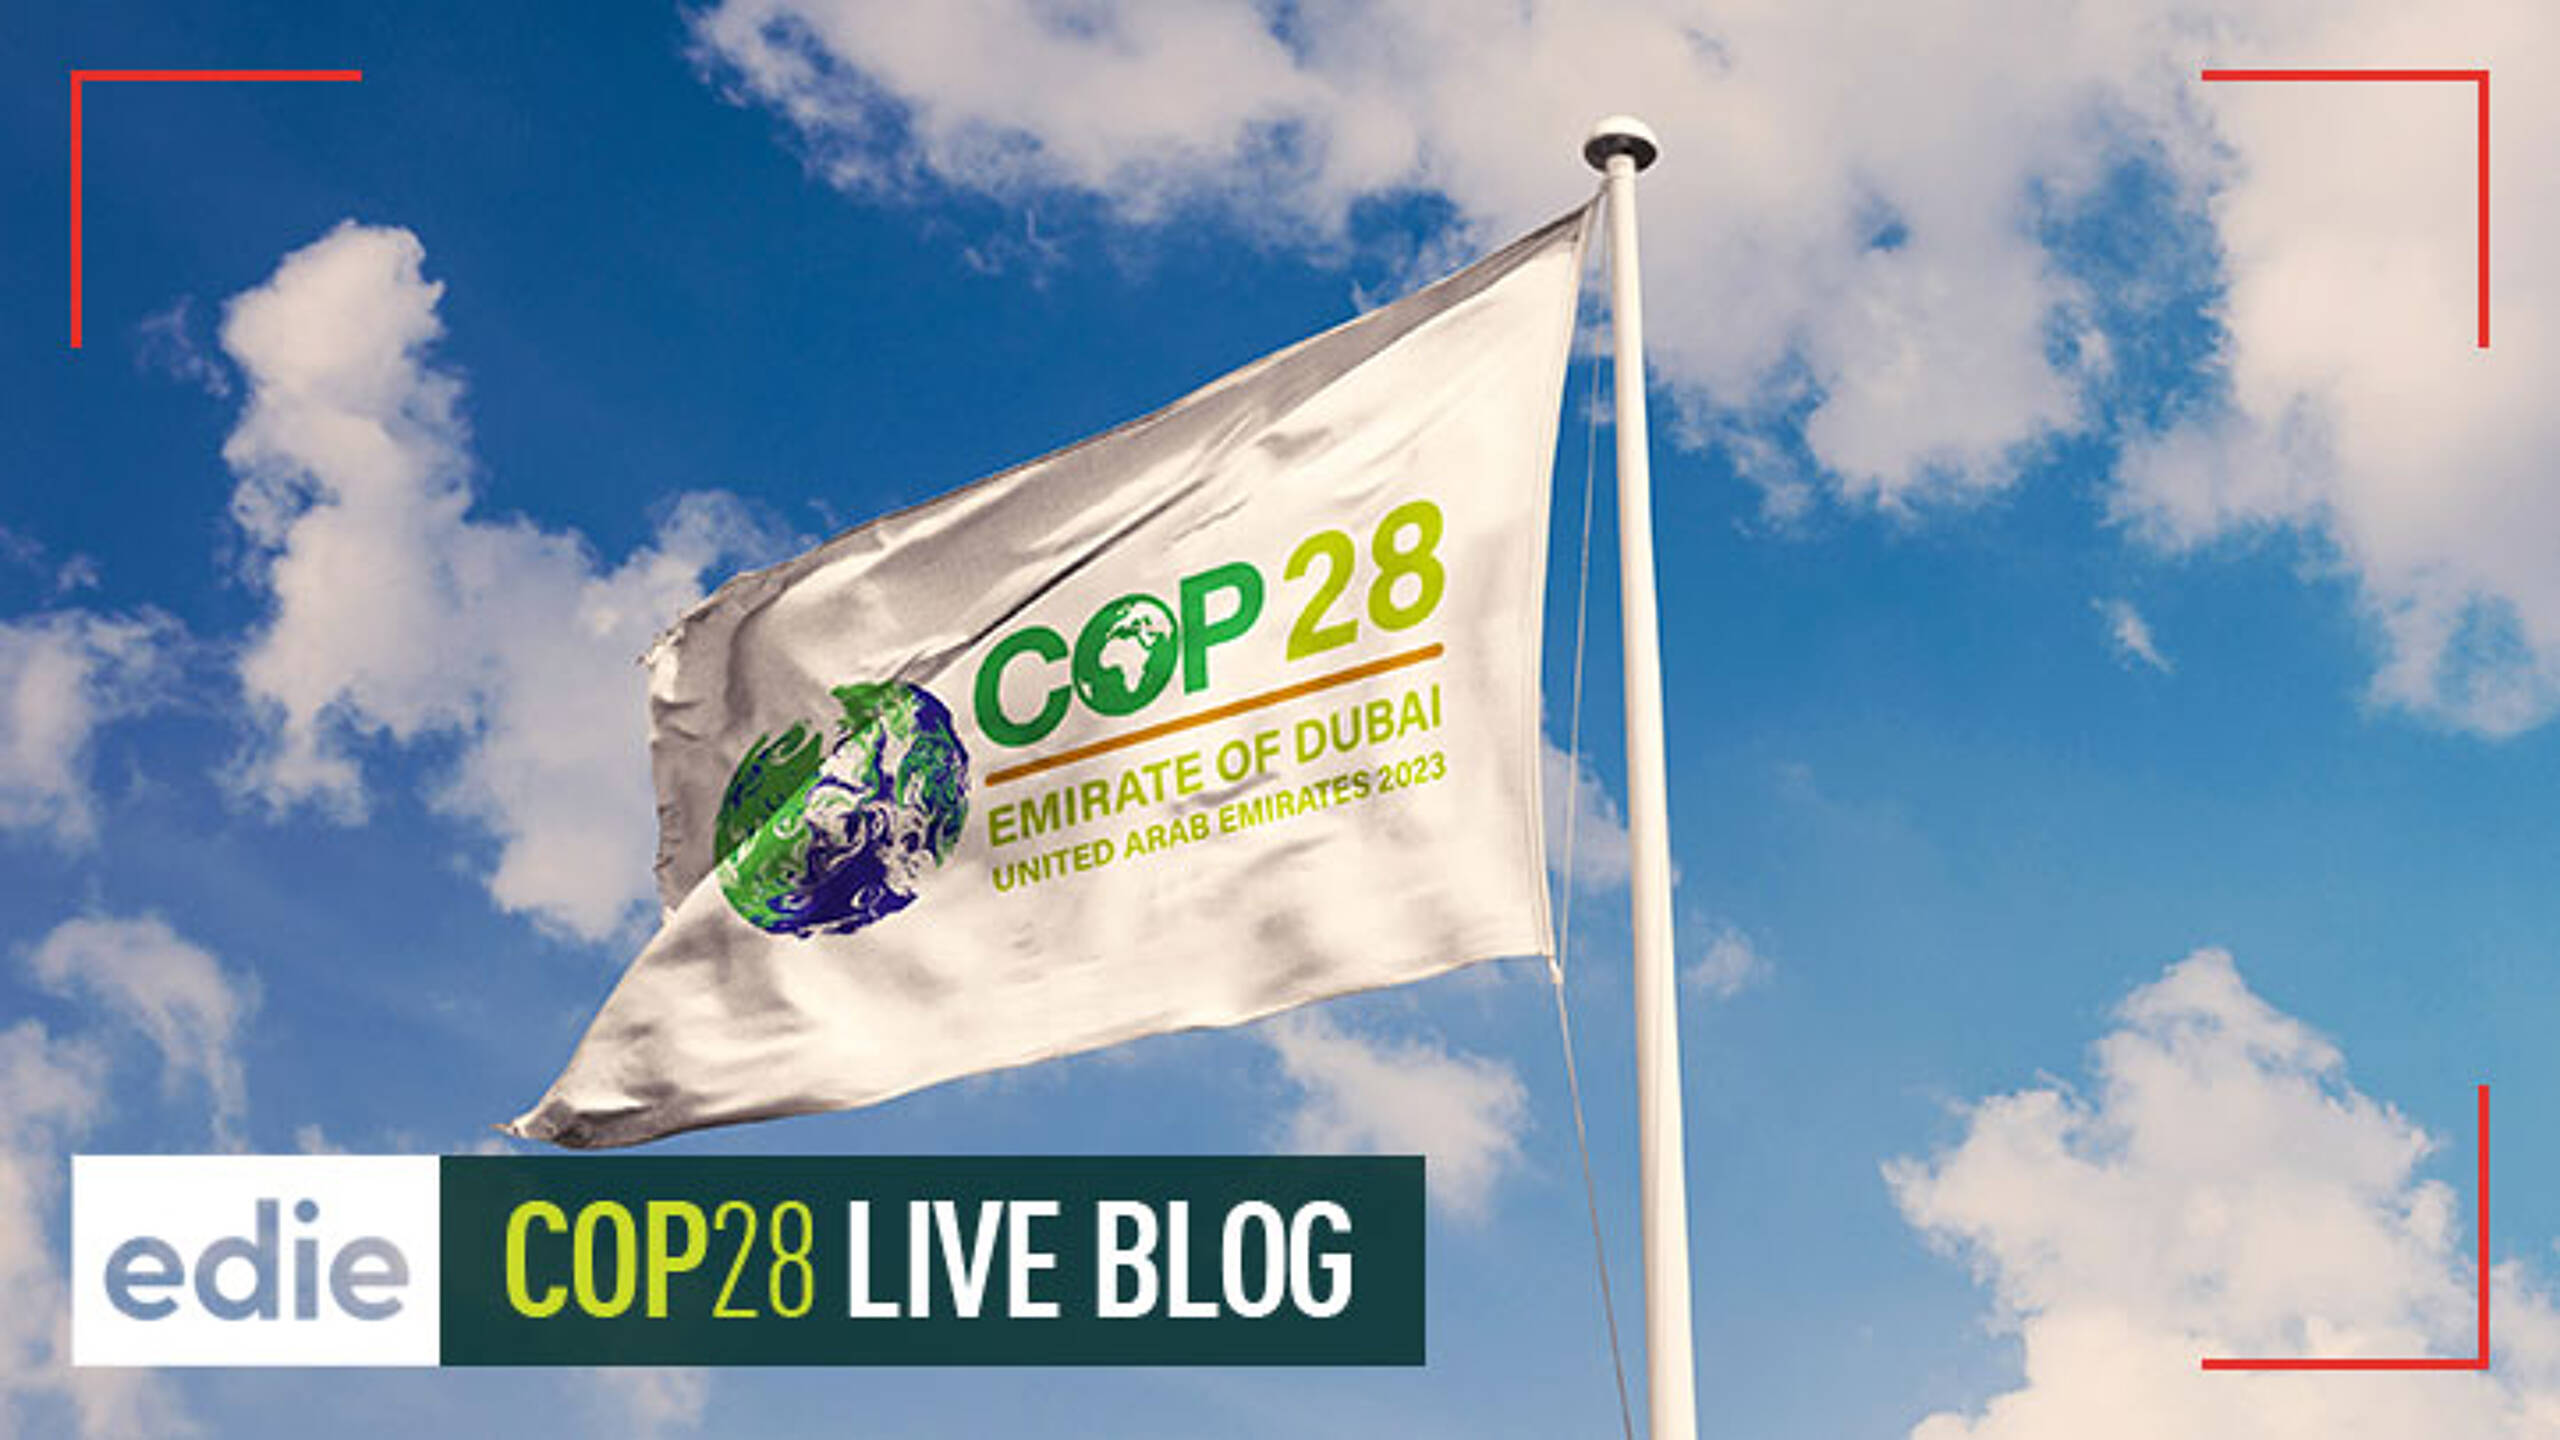 edie’s COP28 live blog: Follow the UN climate summit, as it happens